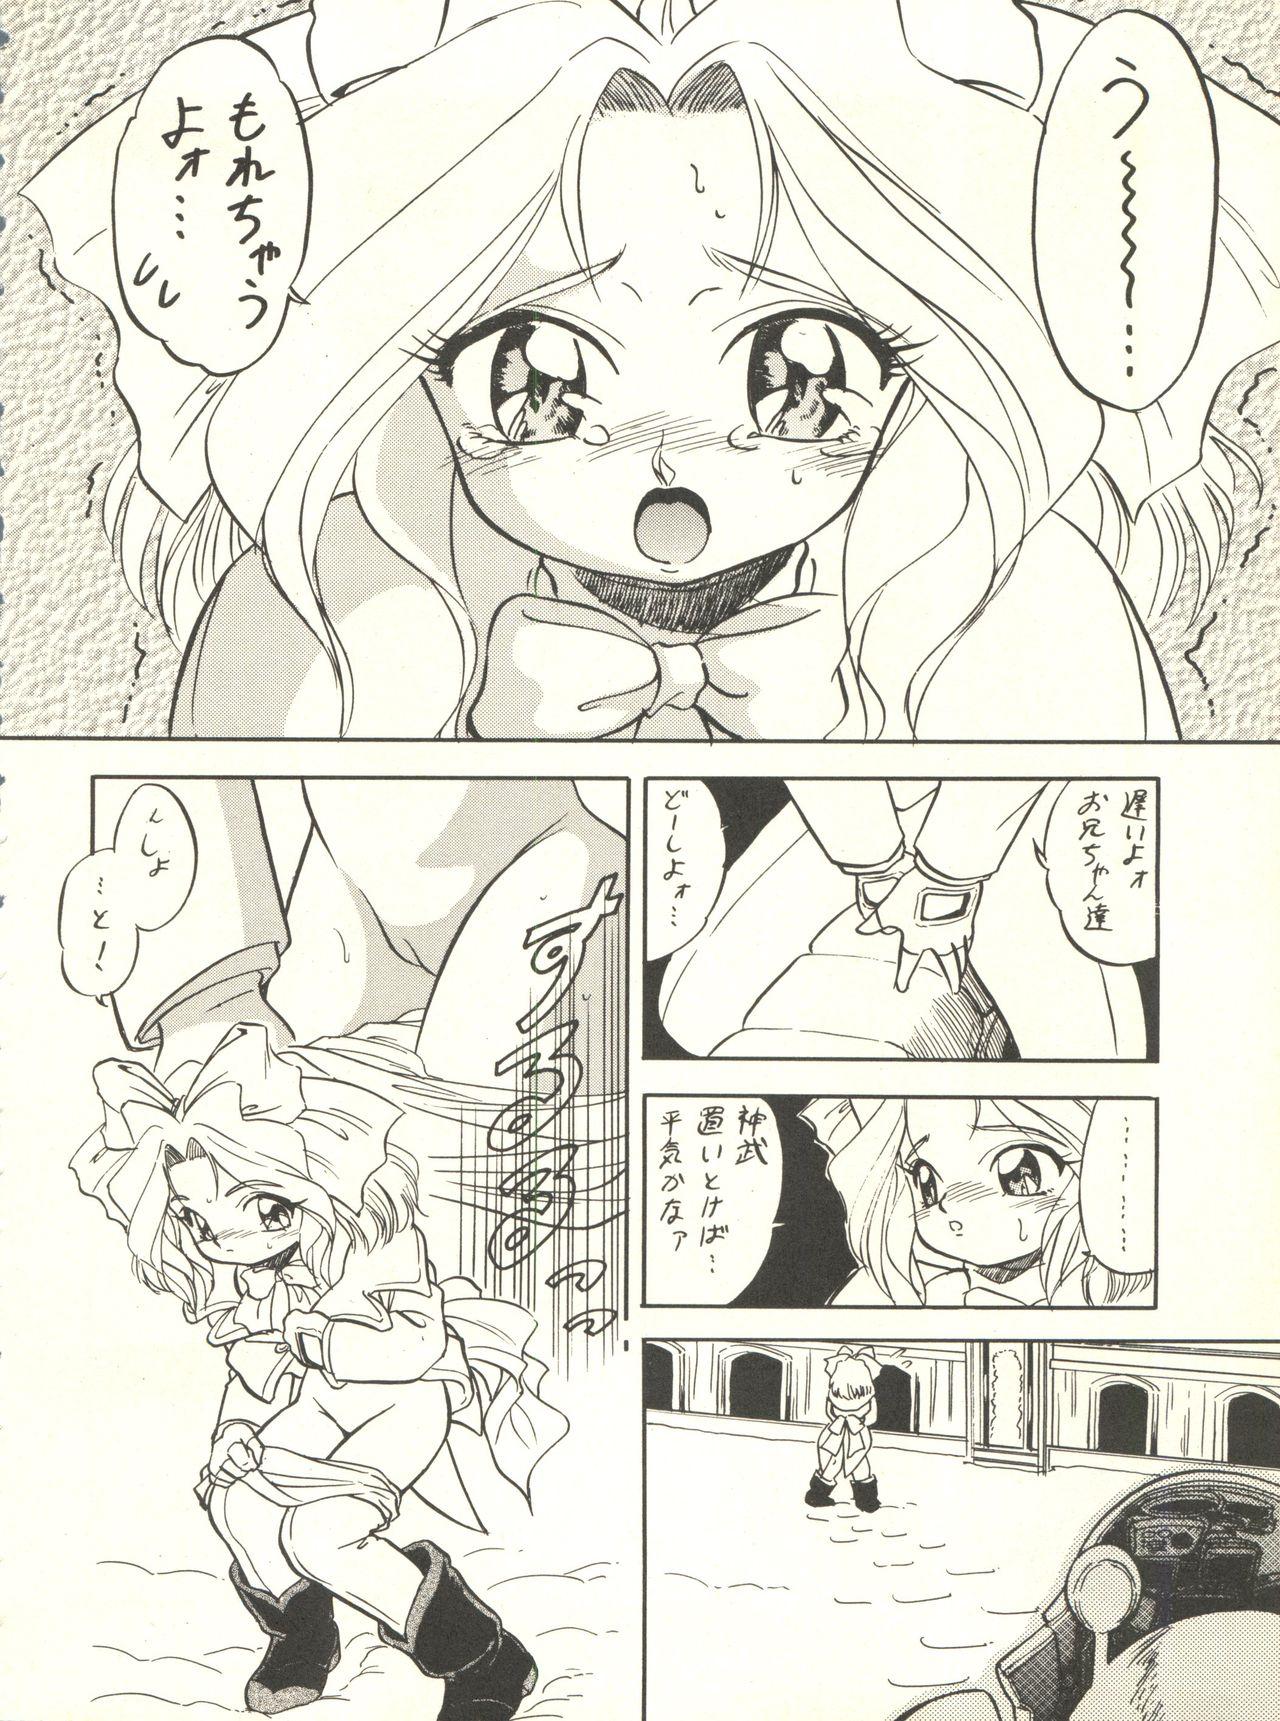 Feet Sakura Janai Mon! Character Voice Nishihara Kumiko - Cardcaptor sakura Sakura taisen Hyper police Arab - Page 8